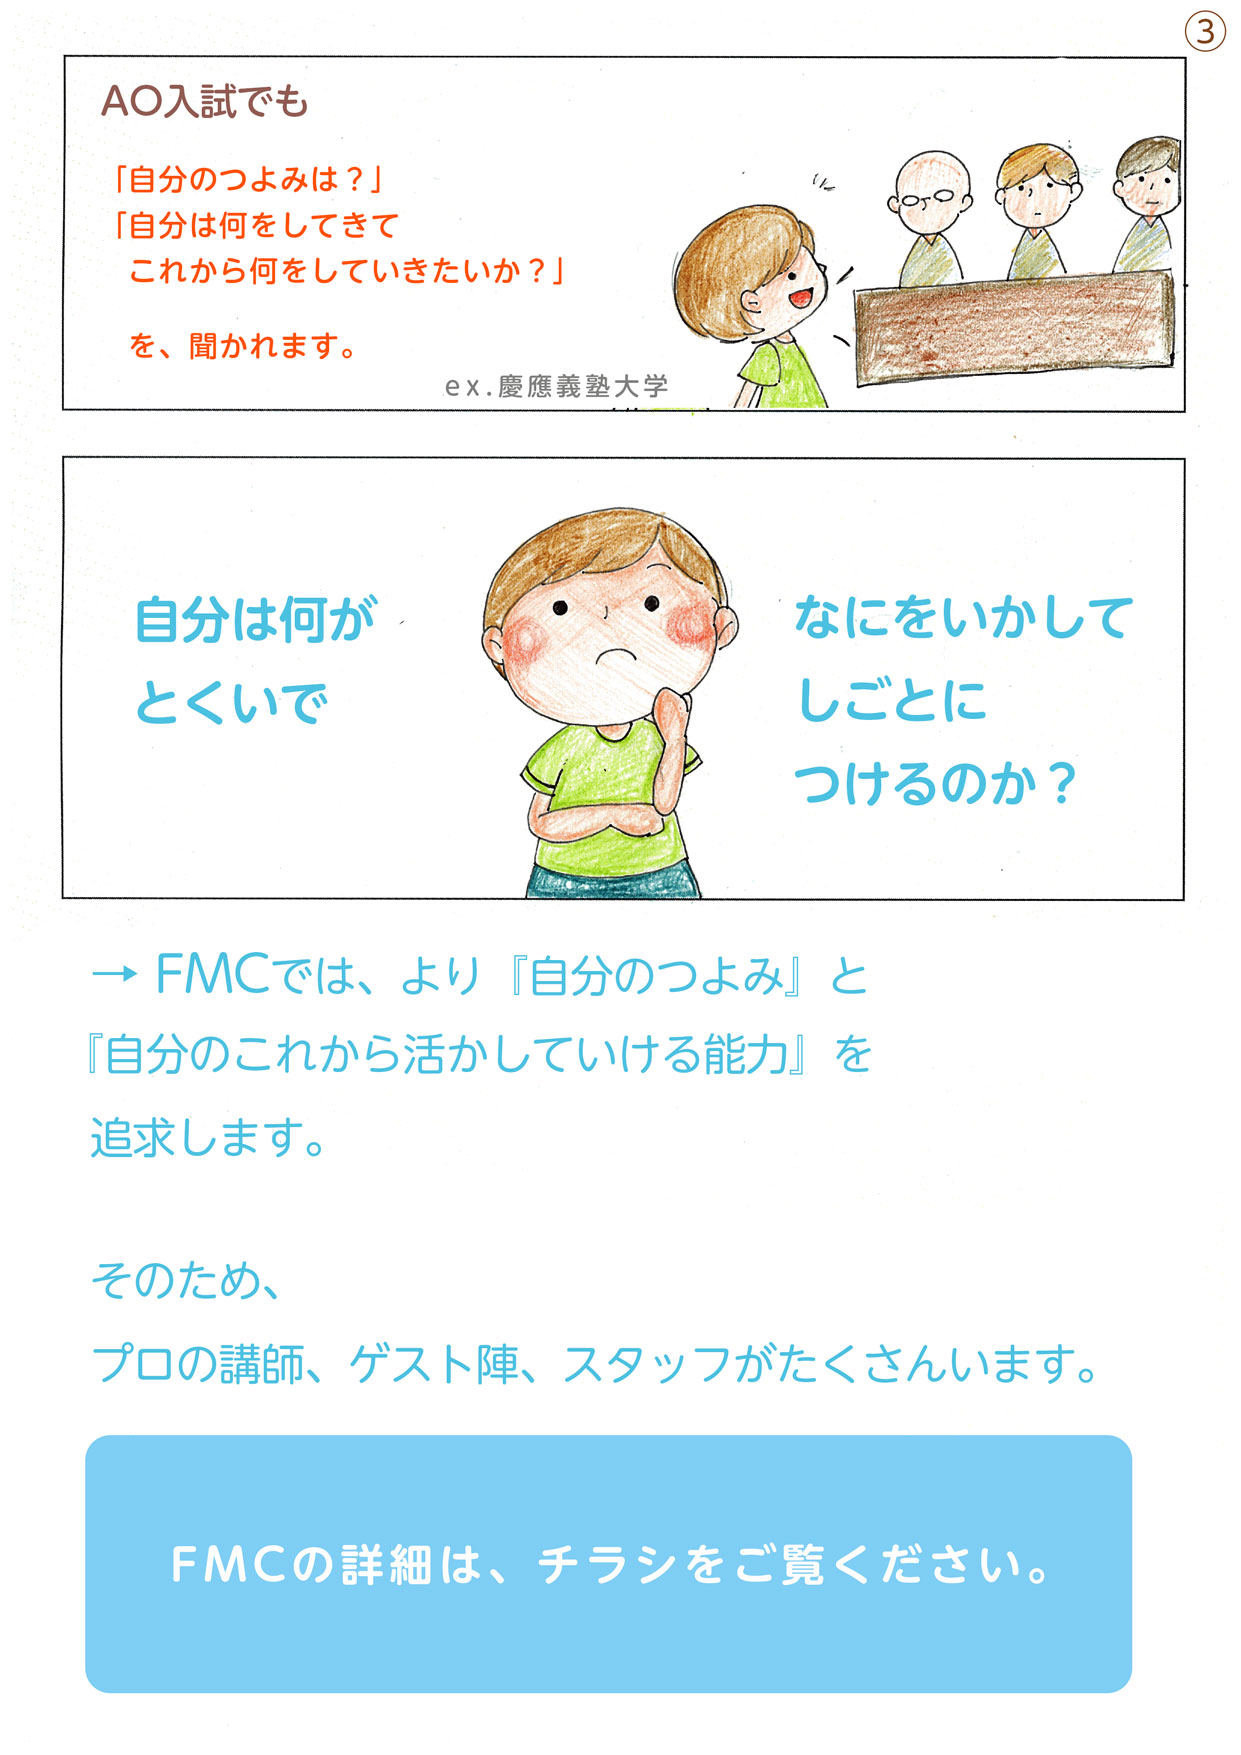 http://www.cobon.jp/news/fmc03.jpg